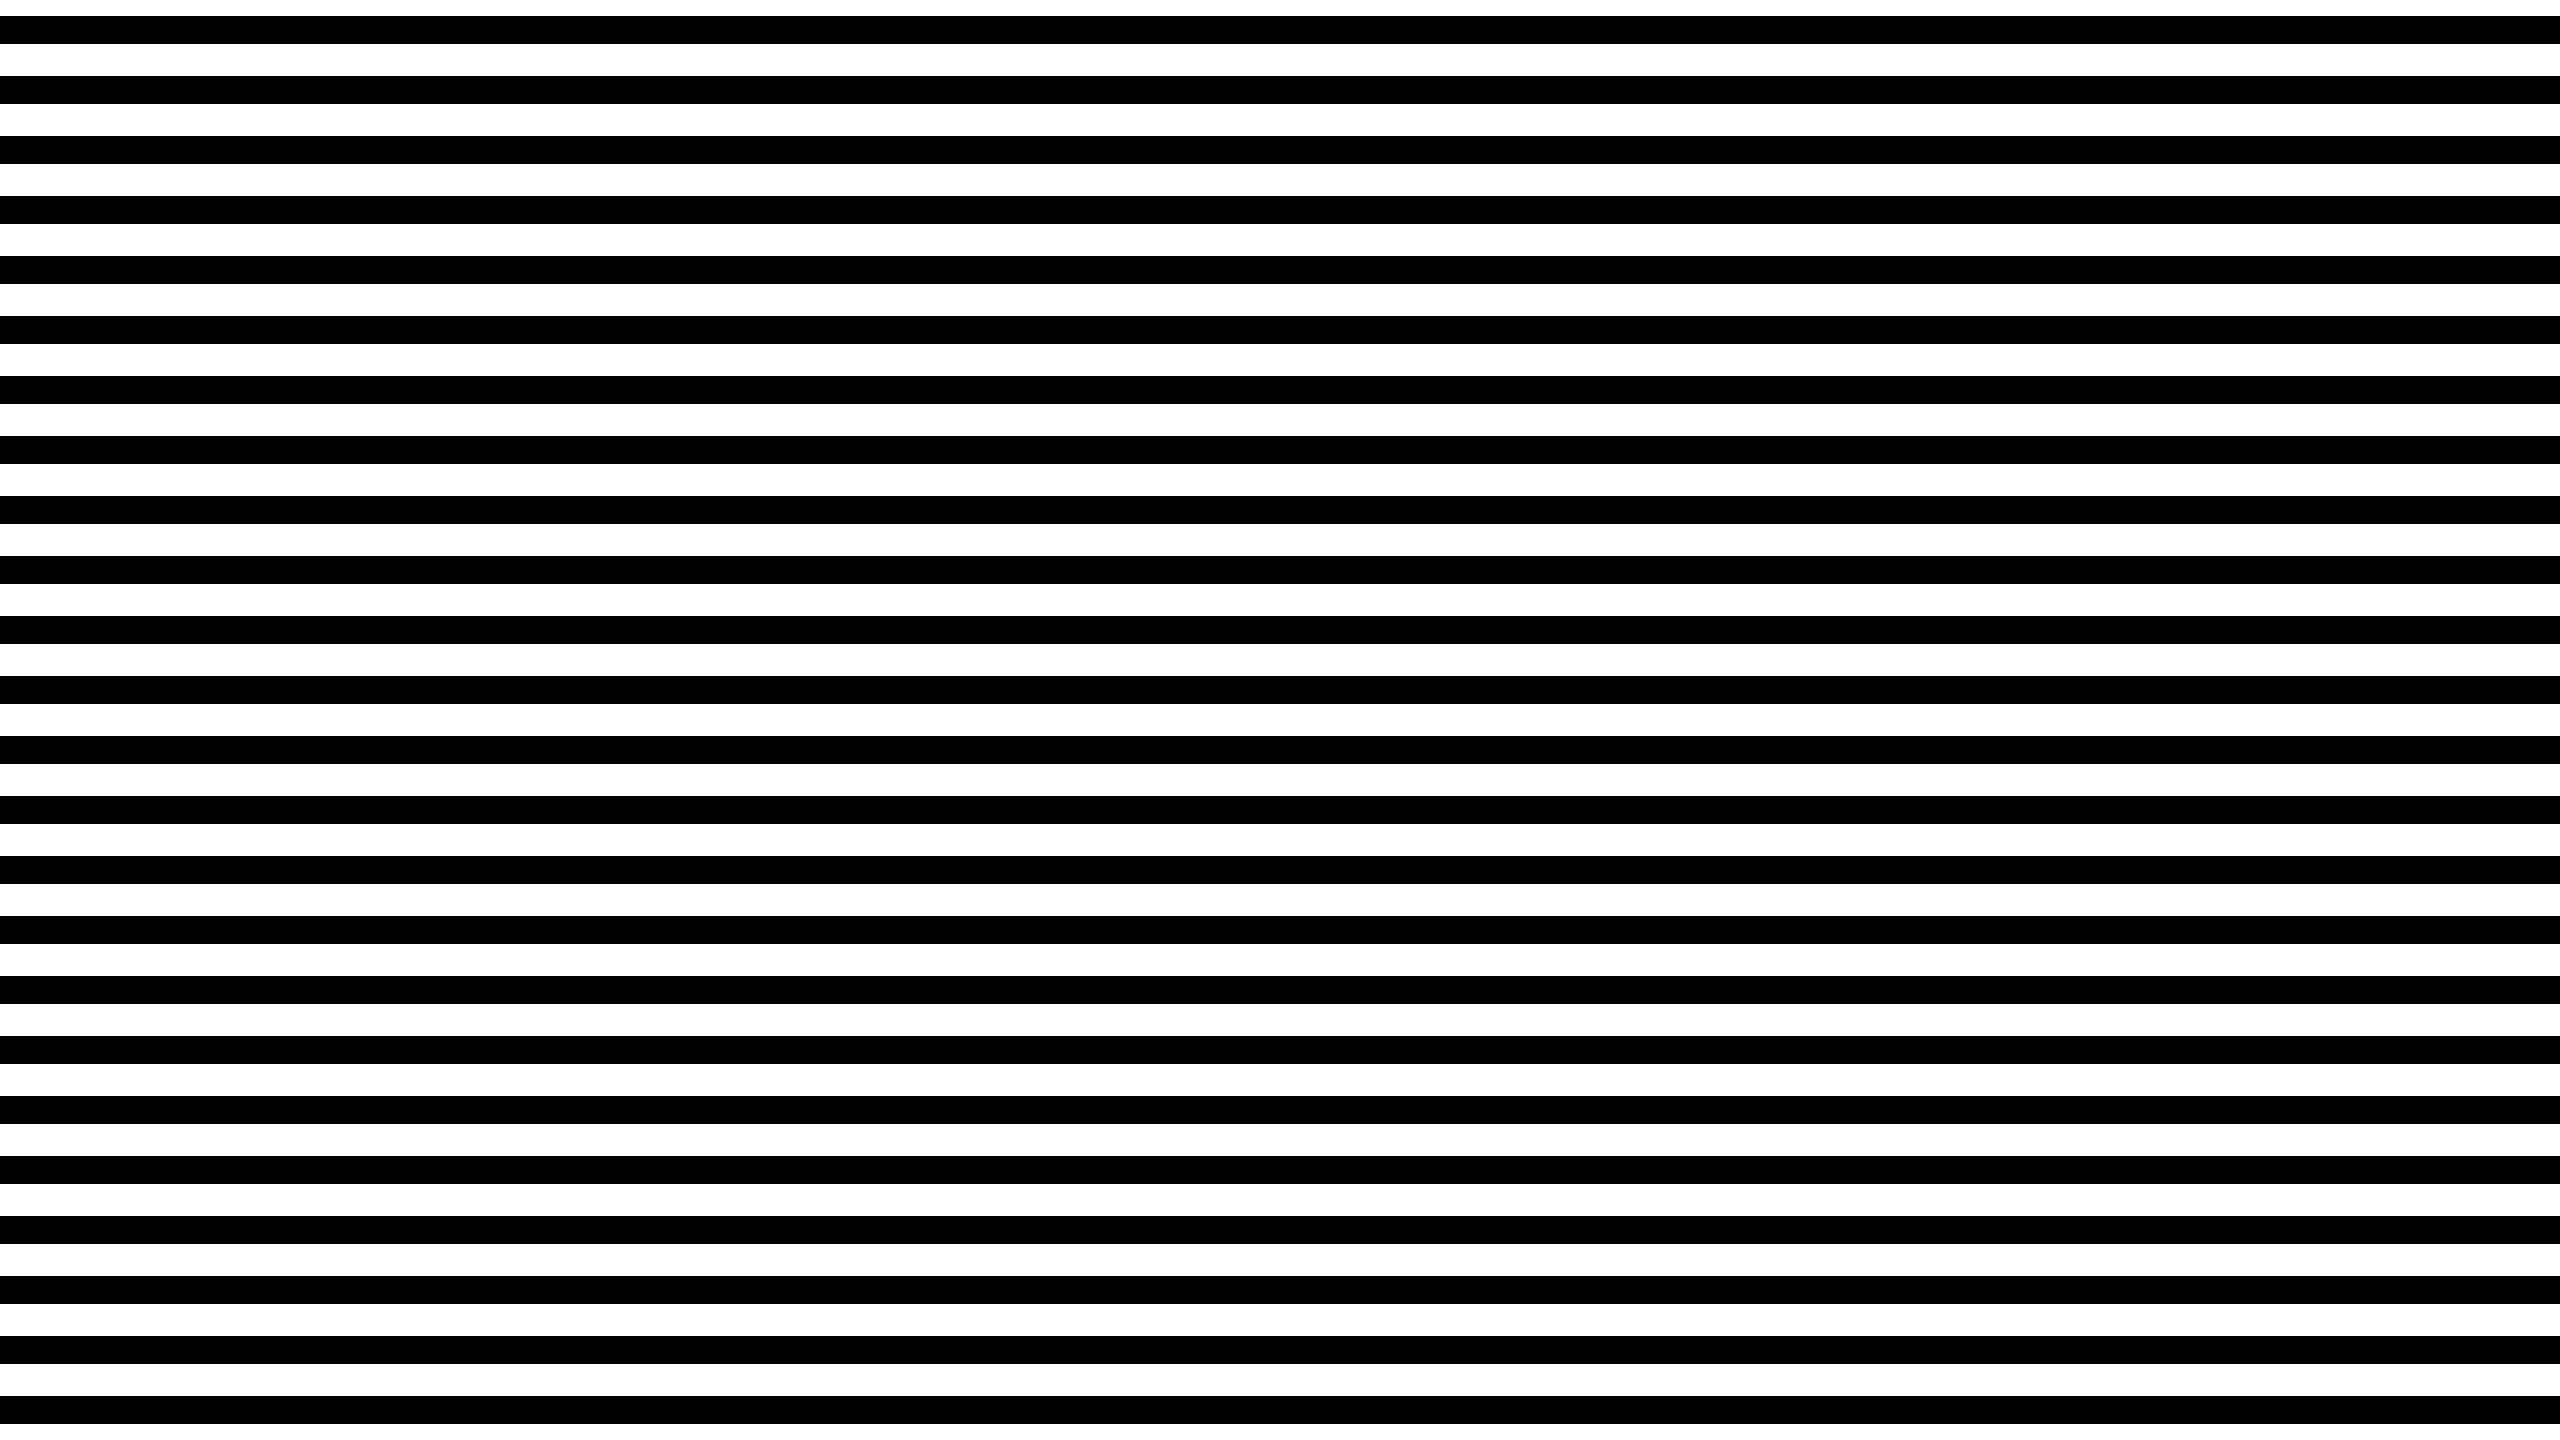 Ютуб черная полоса. Черно белые полоски. Горизонтальные полоски. Горизонтальная линия. Черный в белую полоску.